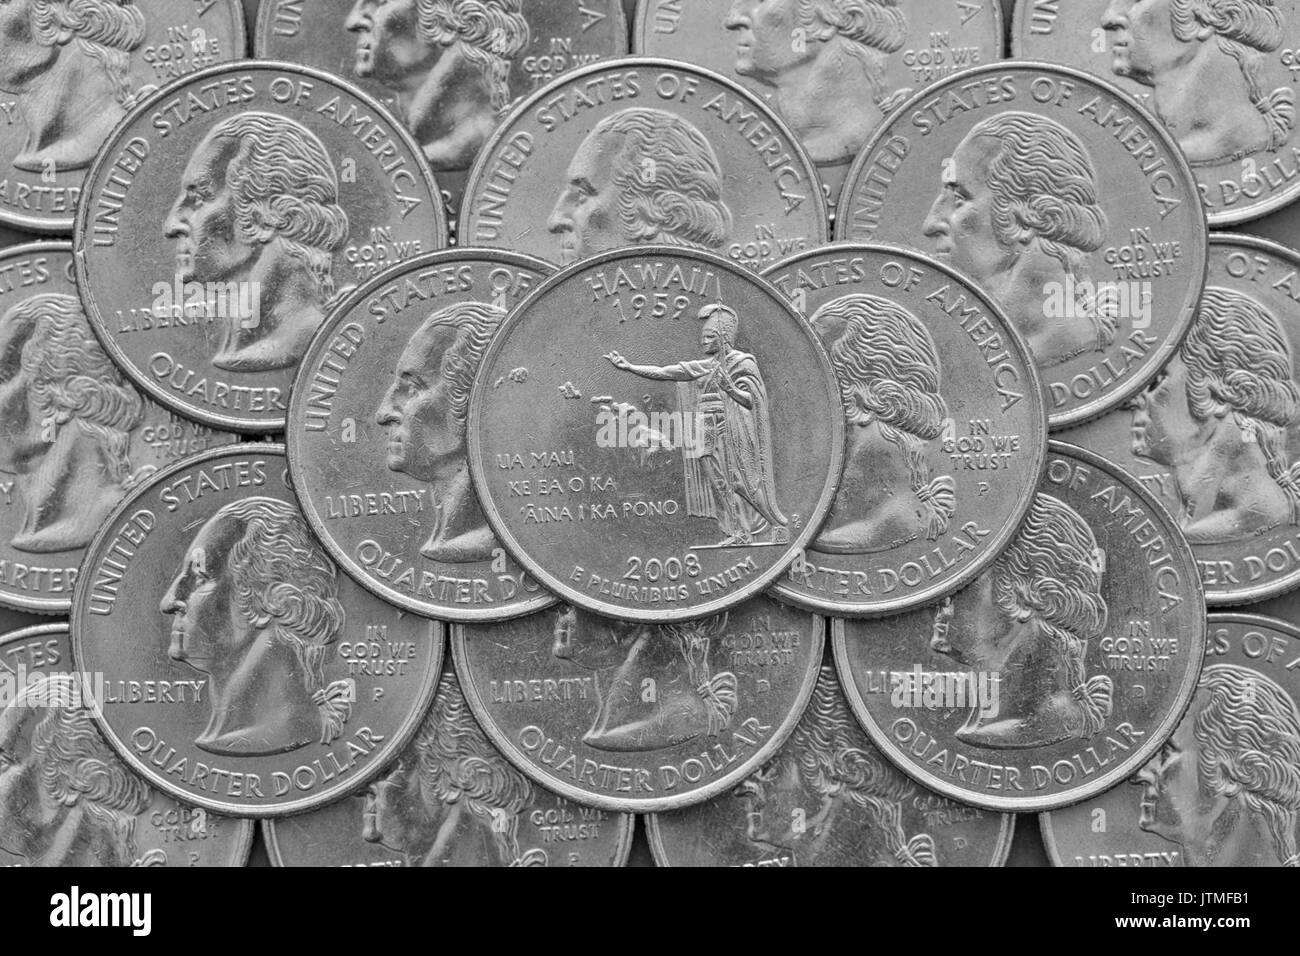 Hawaii State und Münzen der USA. Stapel der US quarter Münzen mit George Washington und auf der Oberseite ein Viertel der Hawaii State. Stockfoto